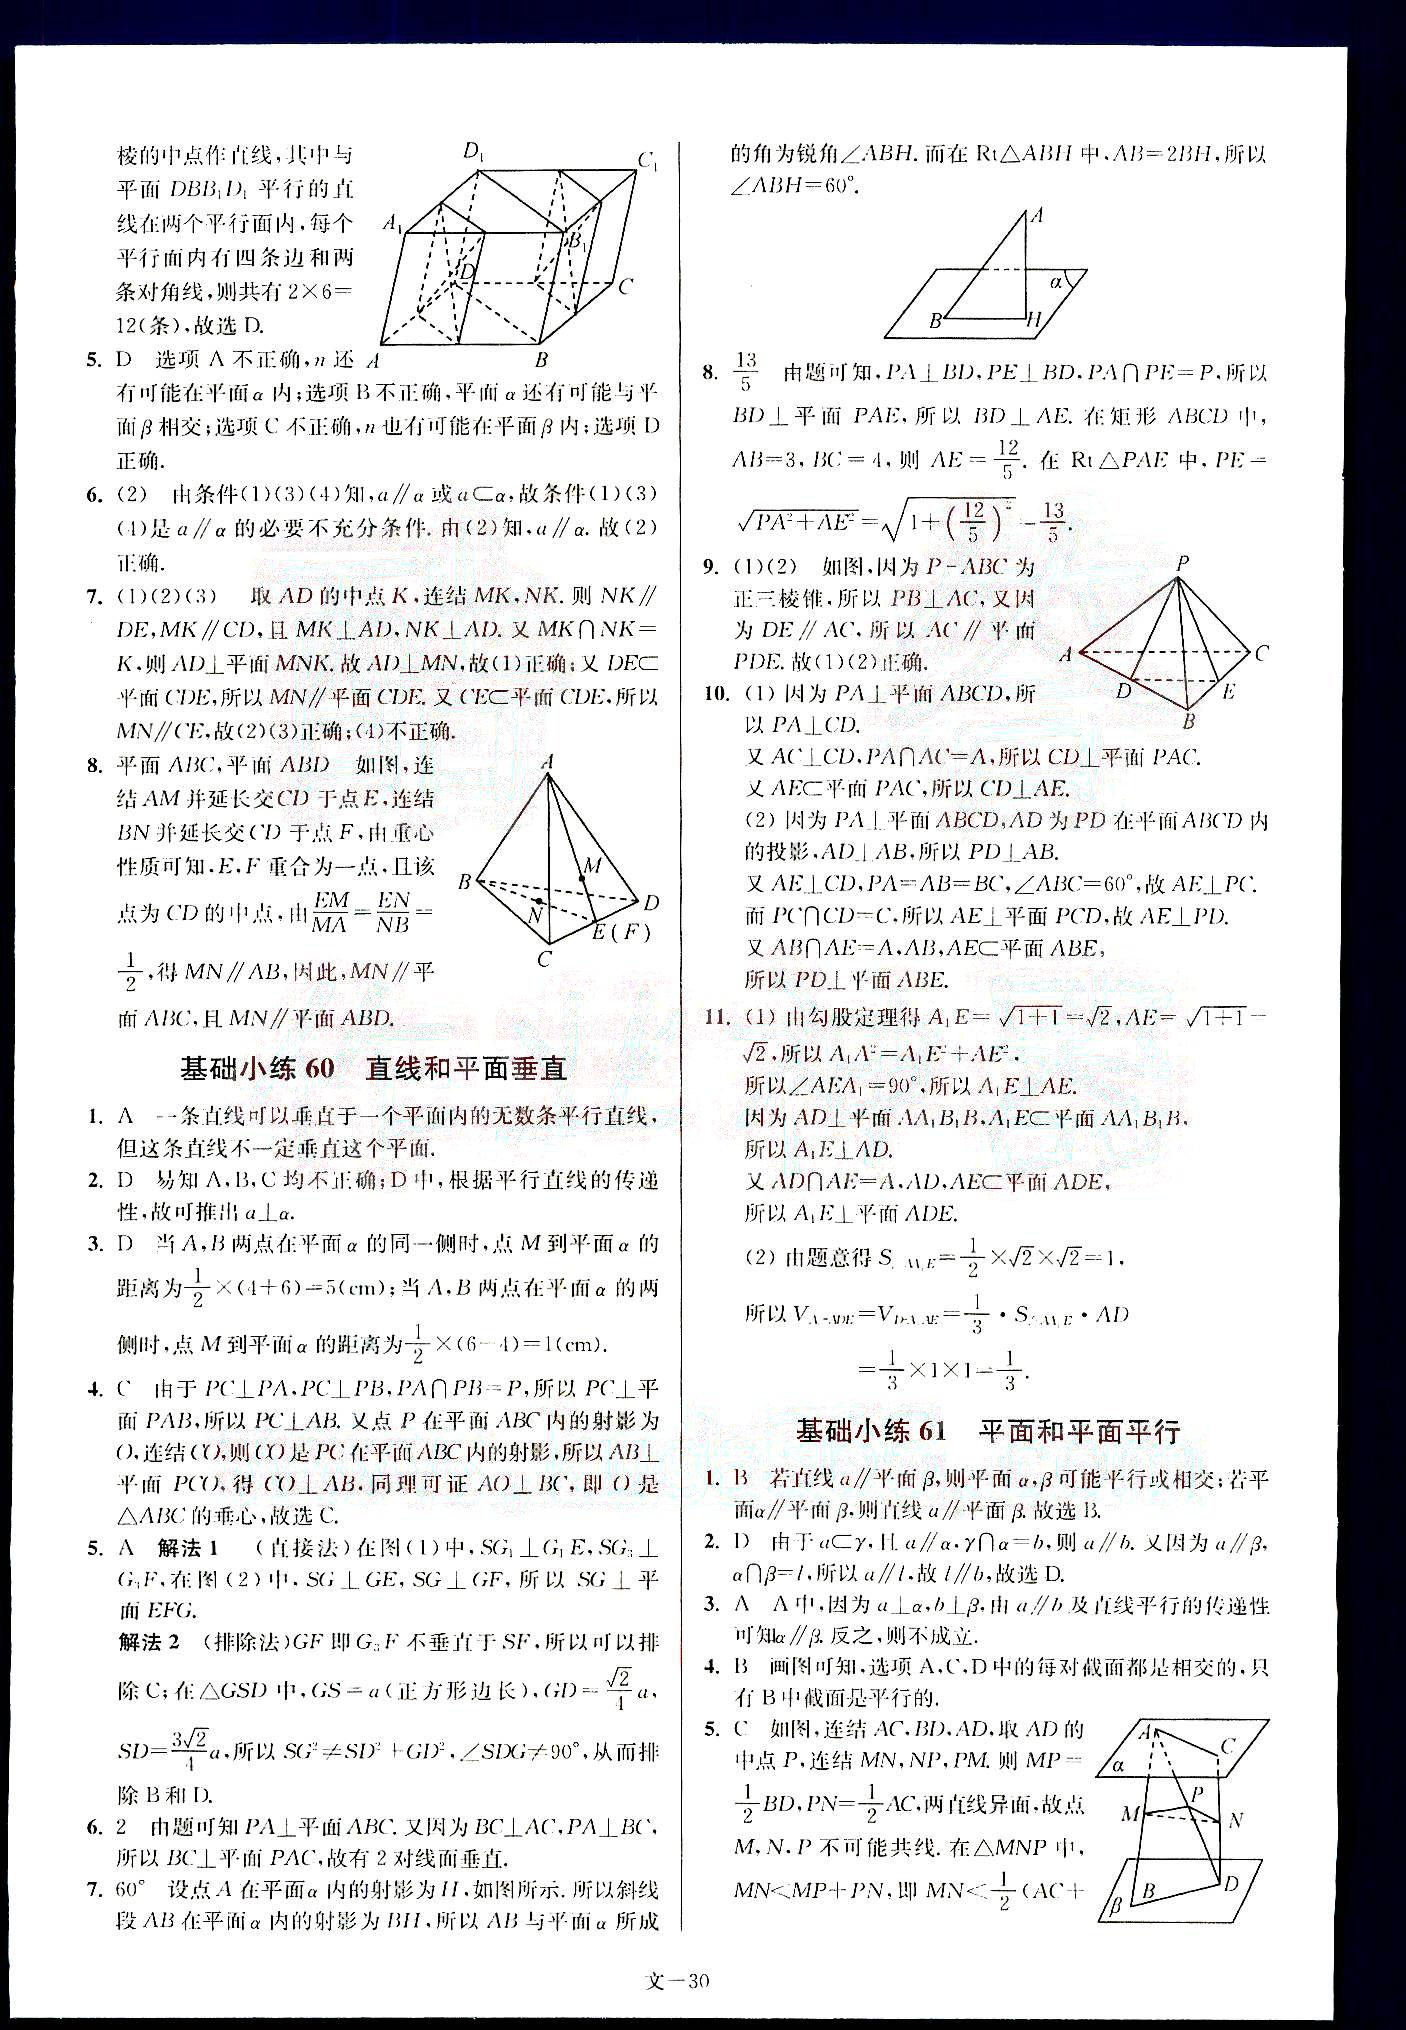 小题狂做-高考数学-文科-最基础篇南京大学出版社 第6部分 [5]